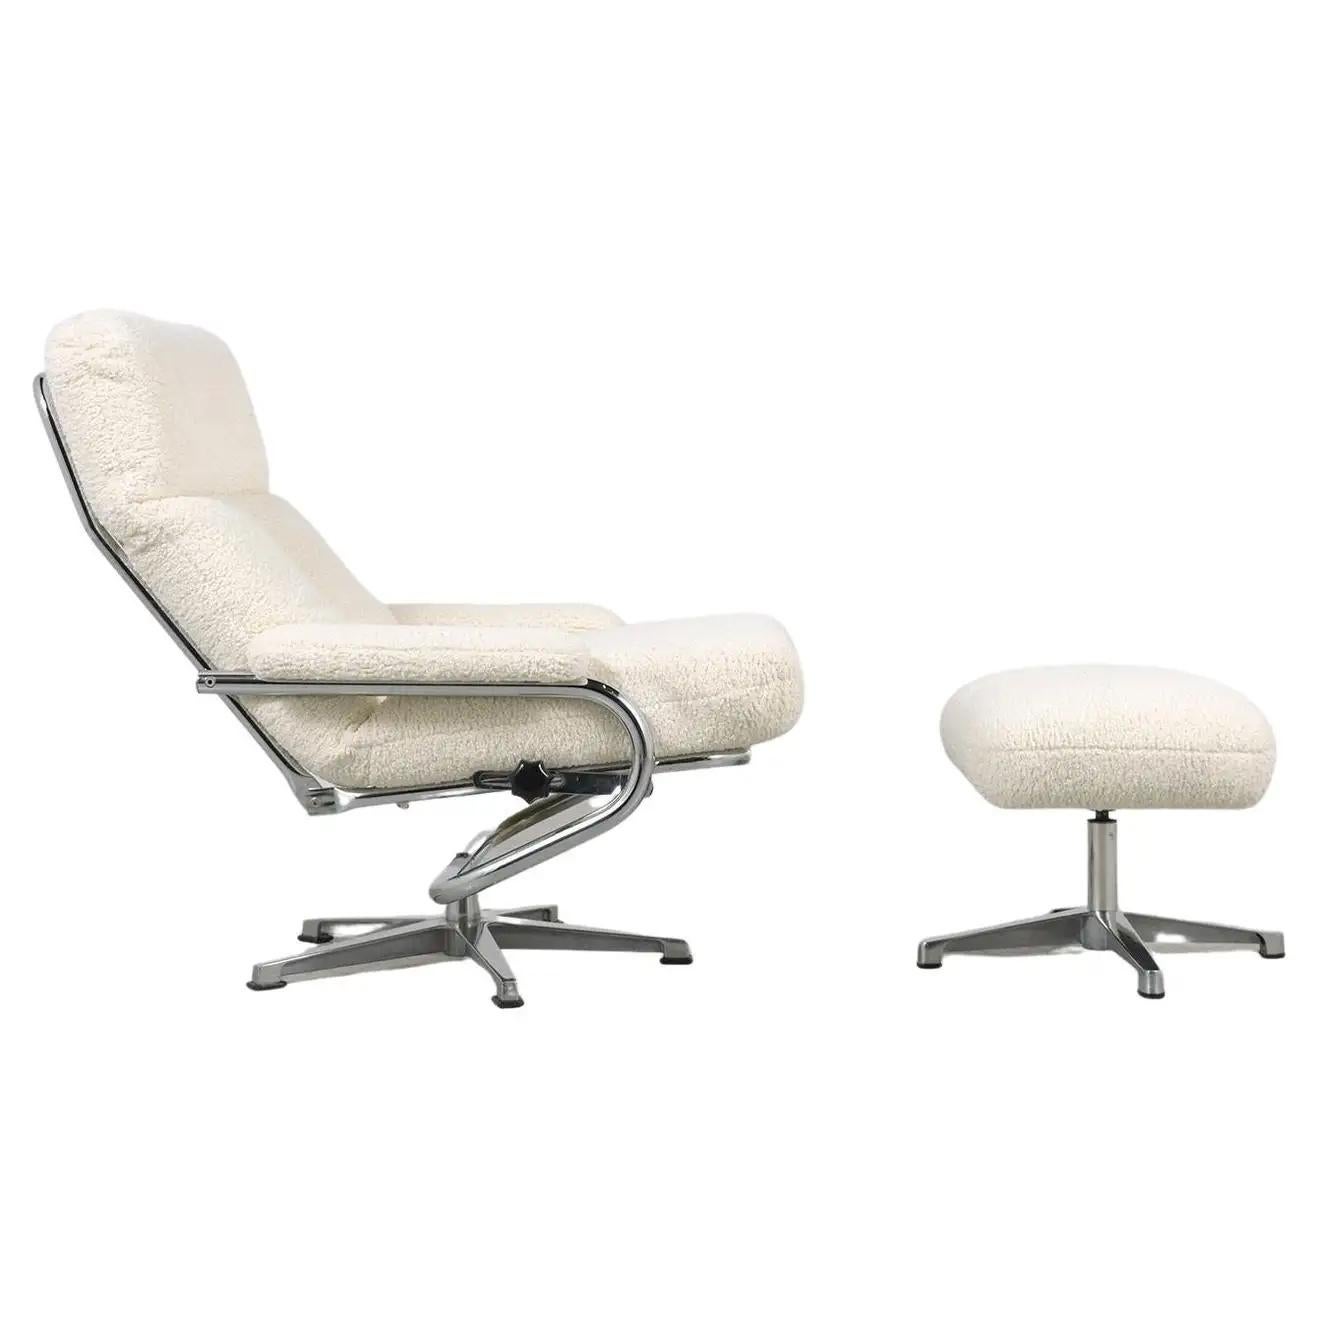 Entrez dans le monde élégant du design moderne du milieu du siècle avec notre ensemble chaise longue et pouf chromés, un témoignage de l'esthétique emblématique des années 1970 mélangée de manière transparente avec le confort contemporain. Fabriqué